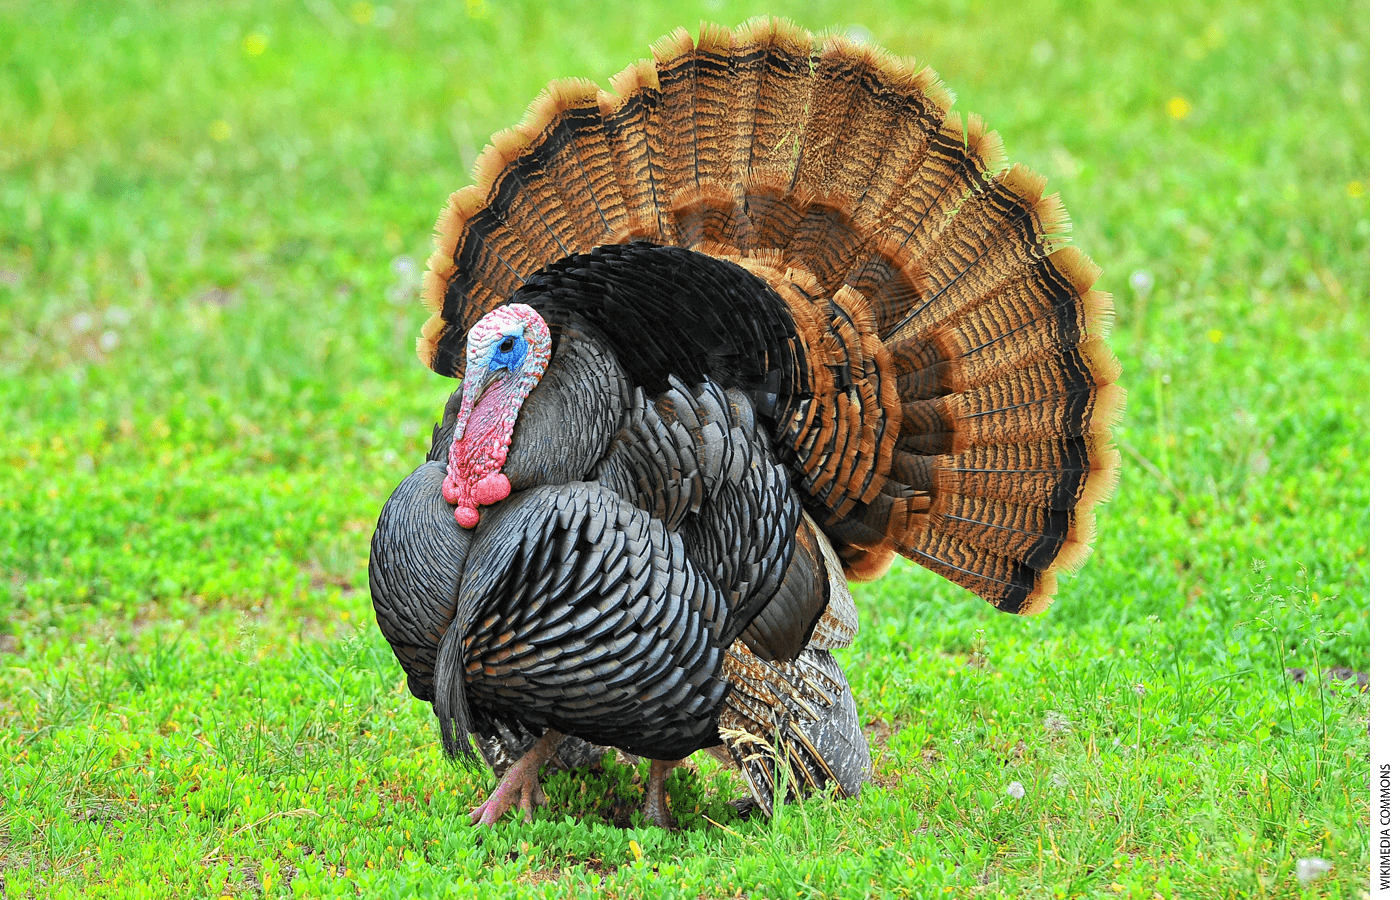 A wild turkey in a field